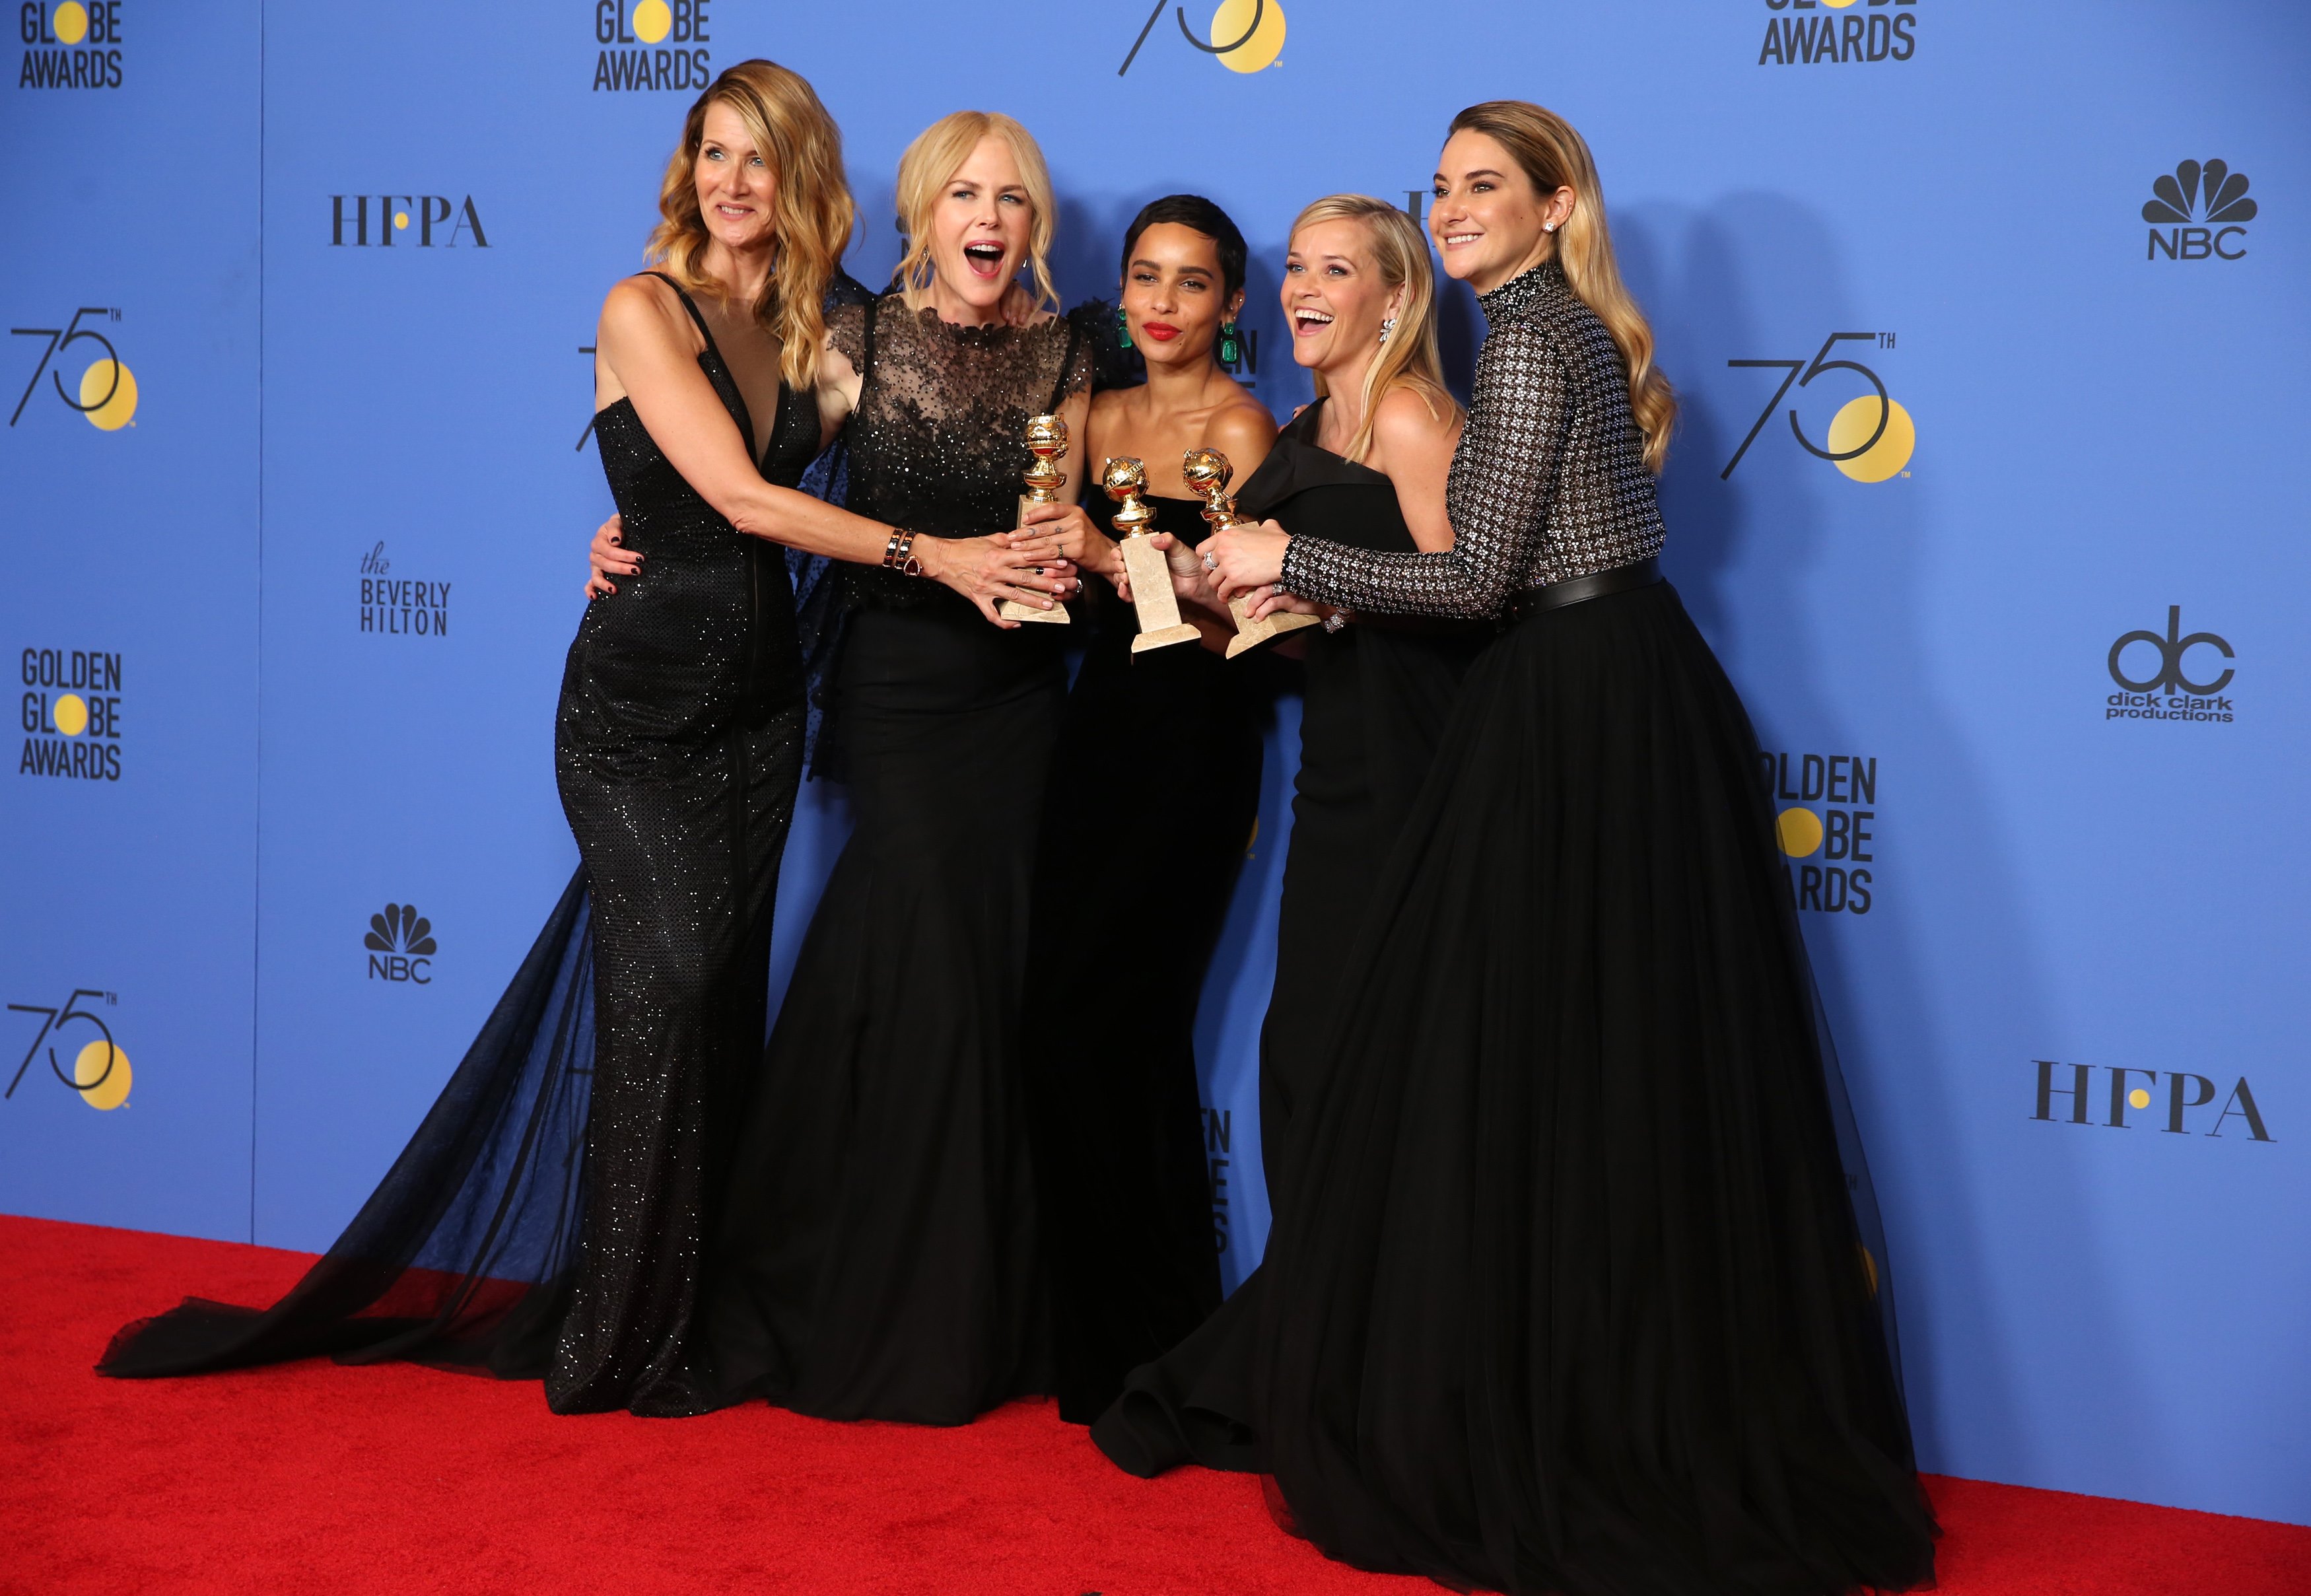 Χρυσές Σφαίρες 2018: Τα “καρφιά” για τον Weinstein, η συγκίνηση και οι νικητές της βραδιάς! [pics,vids]